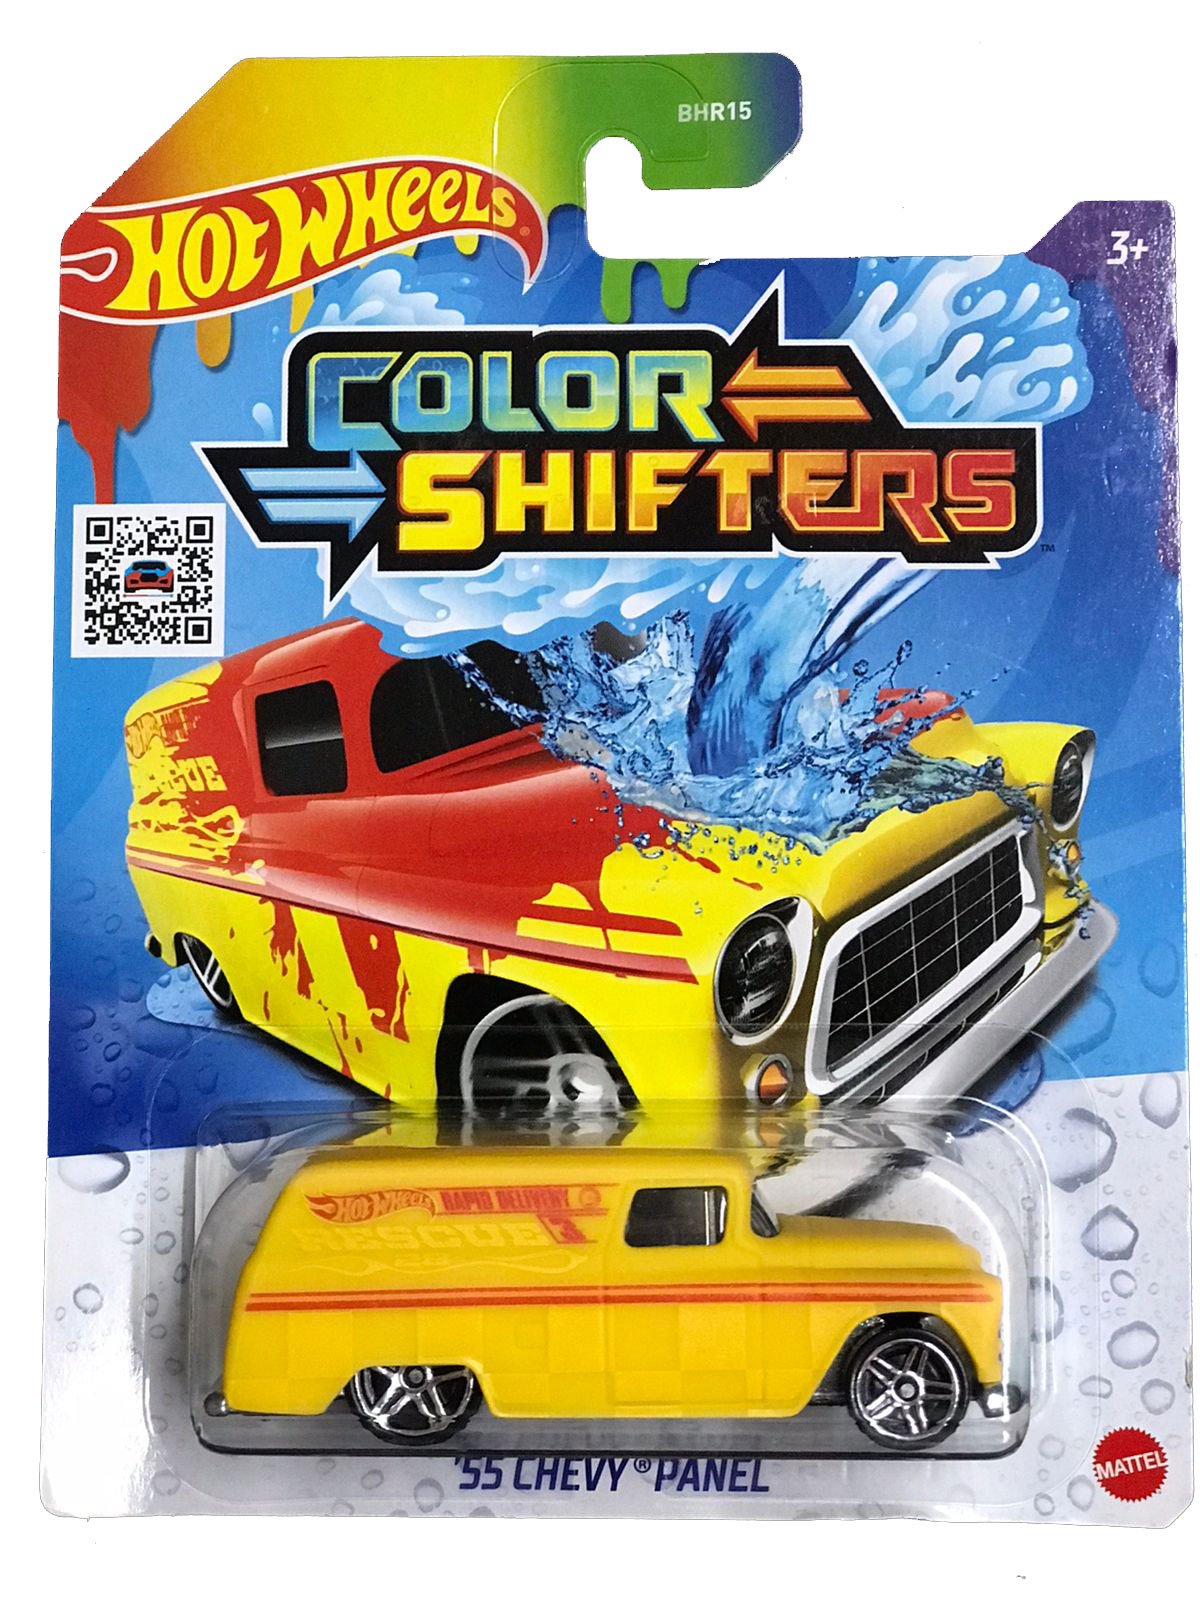 Carrinho Muda de Cor - Color Shifters - 1/64 - Hot Wheels - Mattel